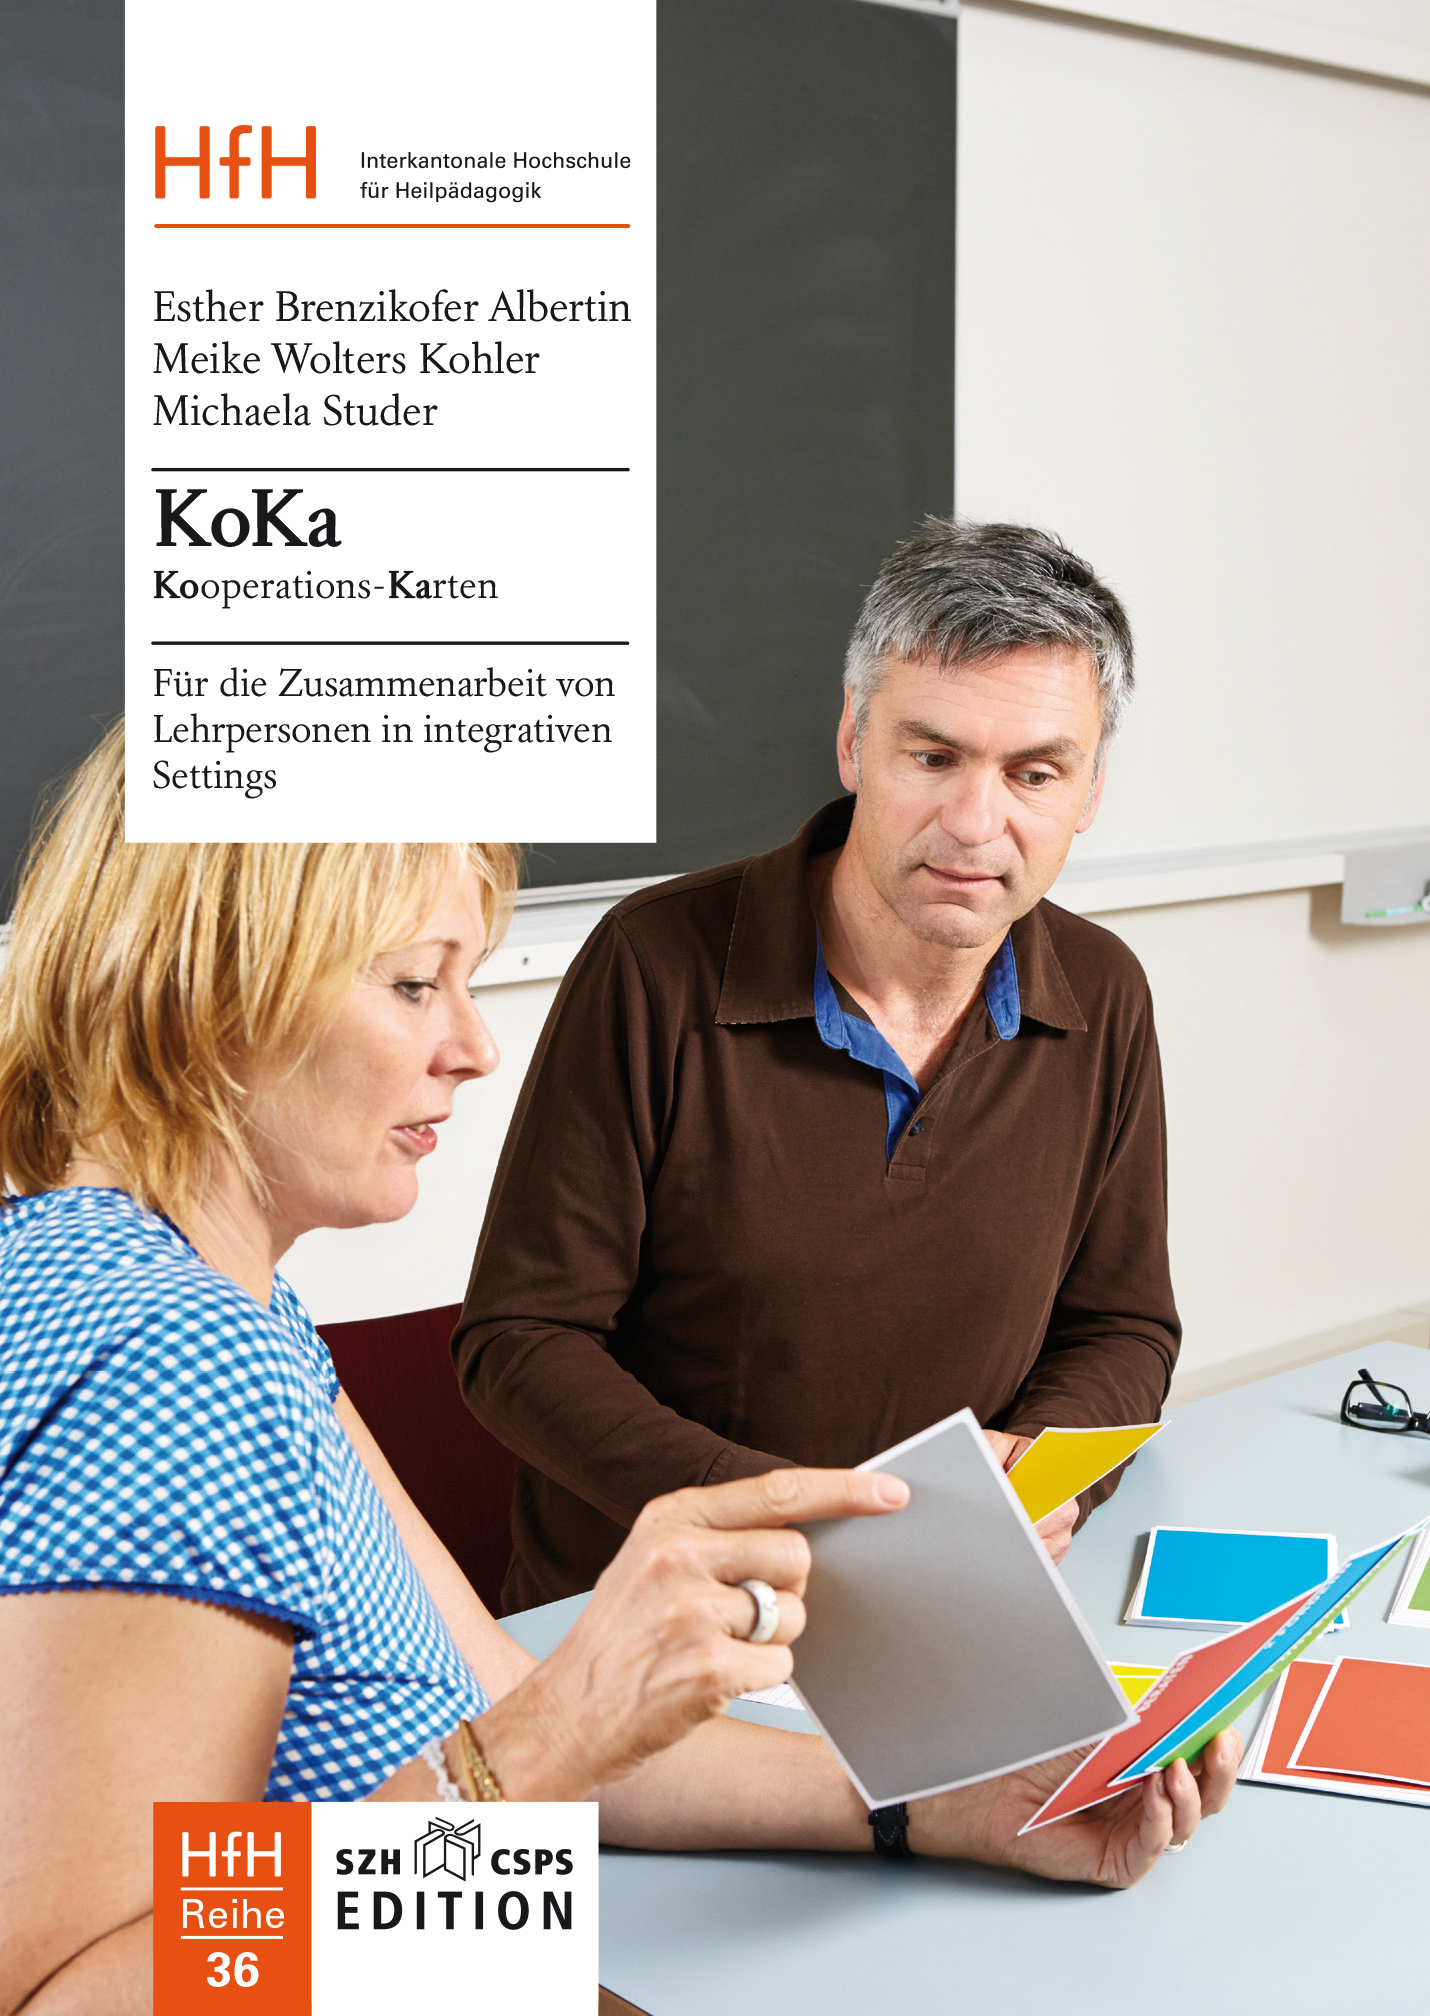  L'image montre la couverture du livre. On y voit deux enseignants qui utilisent les cartes KoKa. 